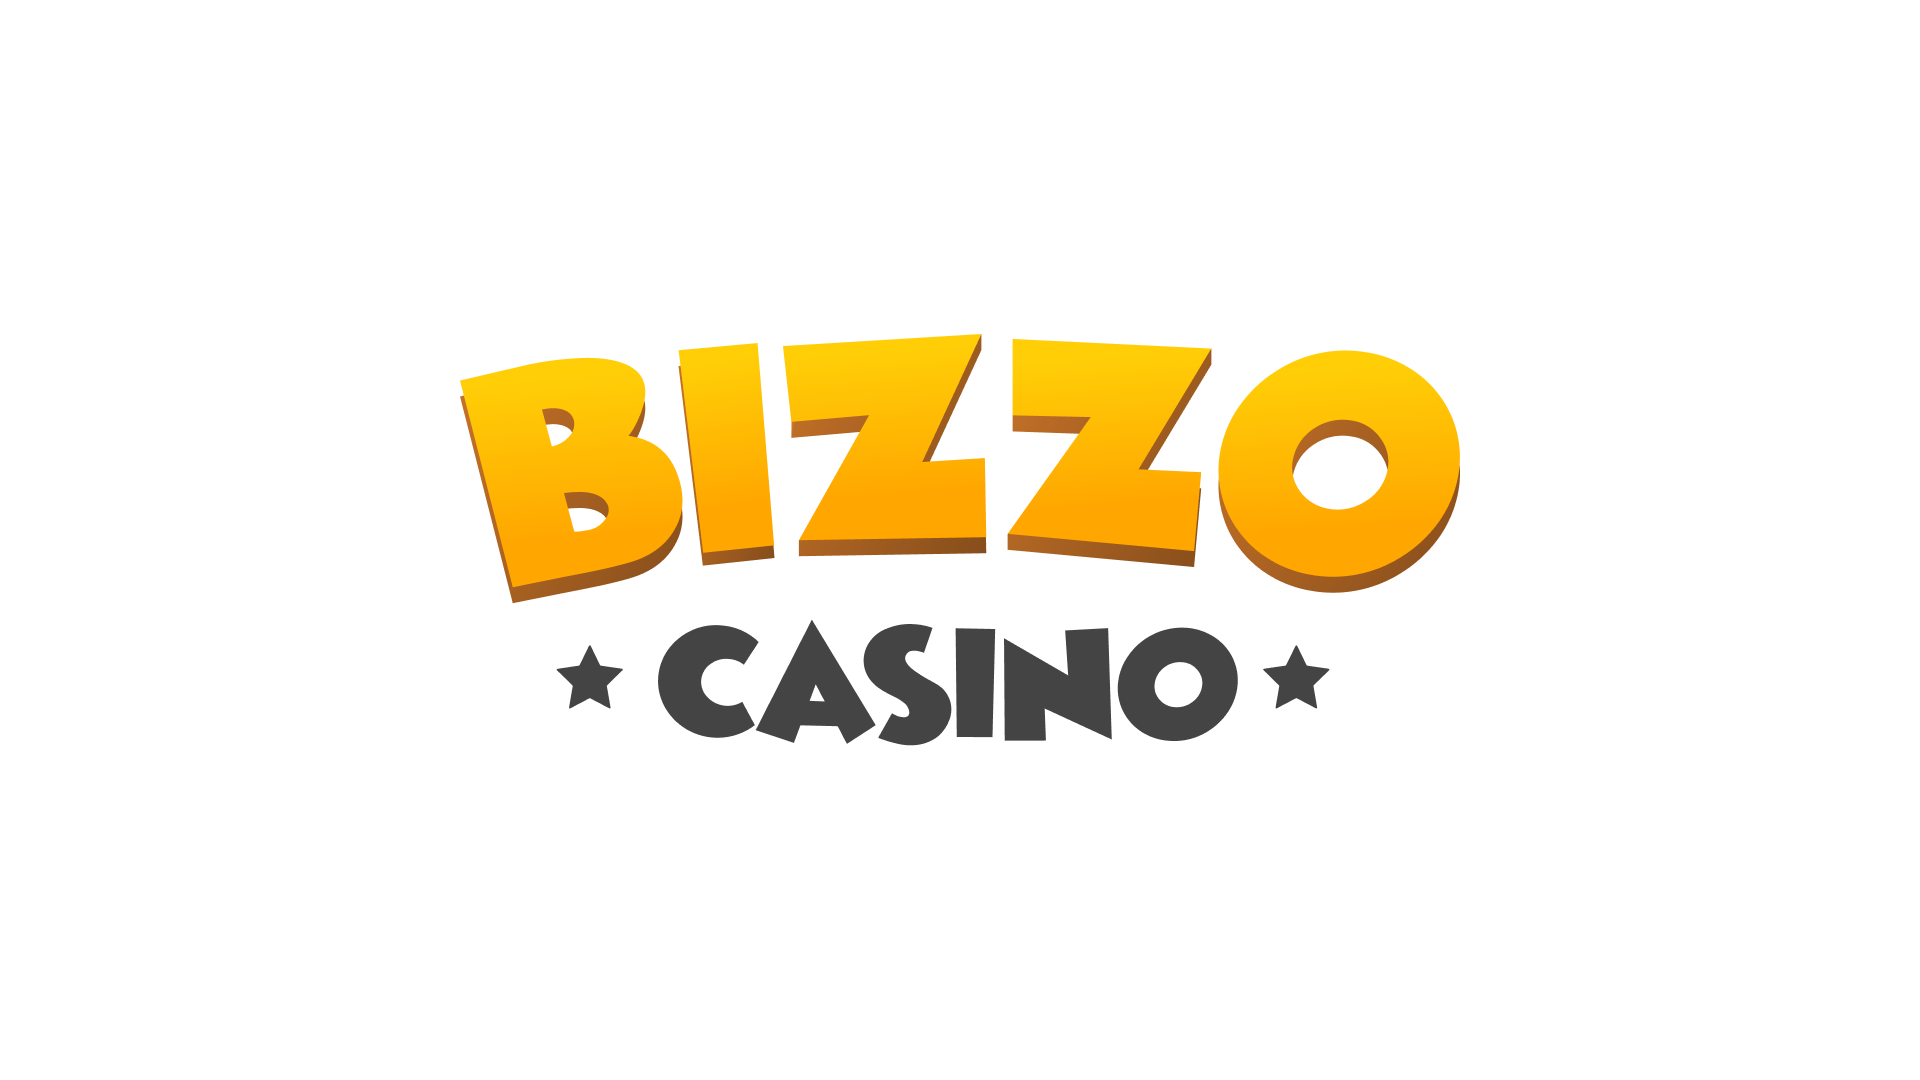 Bizzo casino opiniones: ¿adecuado para grandes victorias?